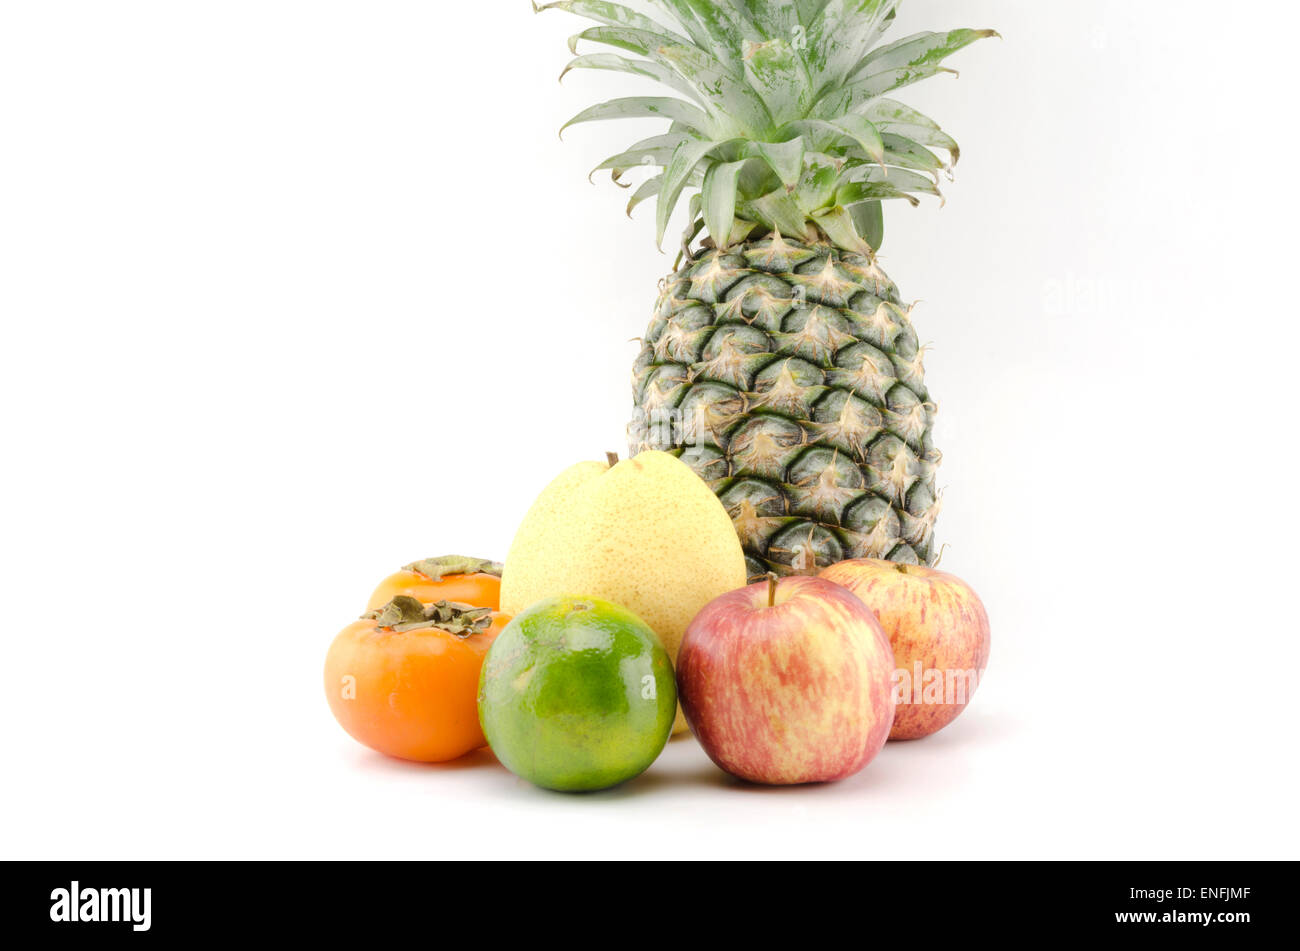 L'ananas poire chinoise persimon et orange vert isolatedon fond blanc Banque D'Images